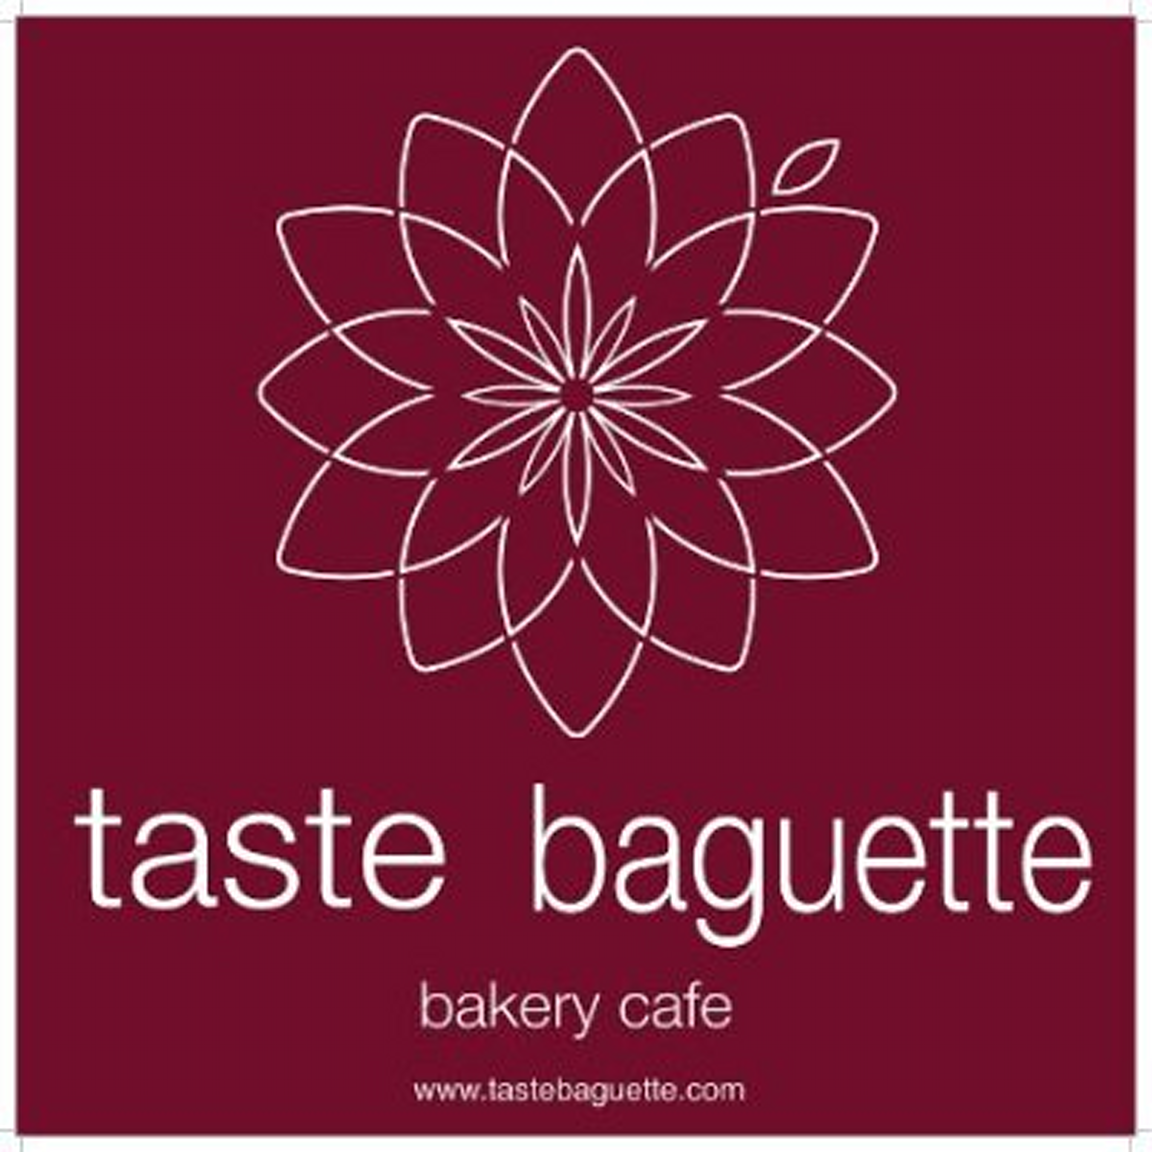 taste-baguette-logo